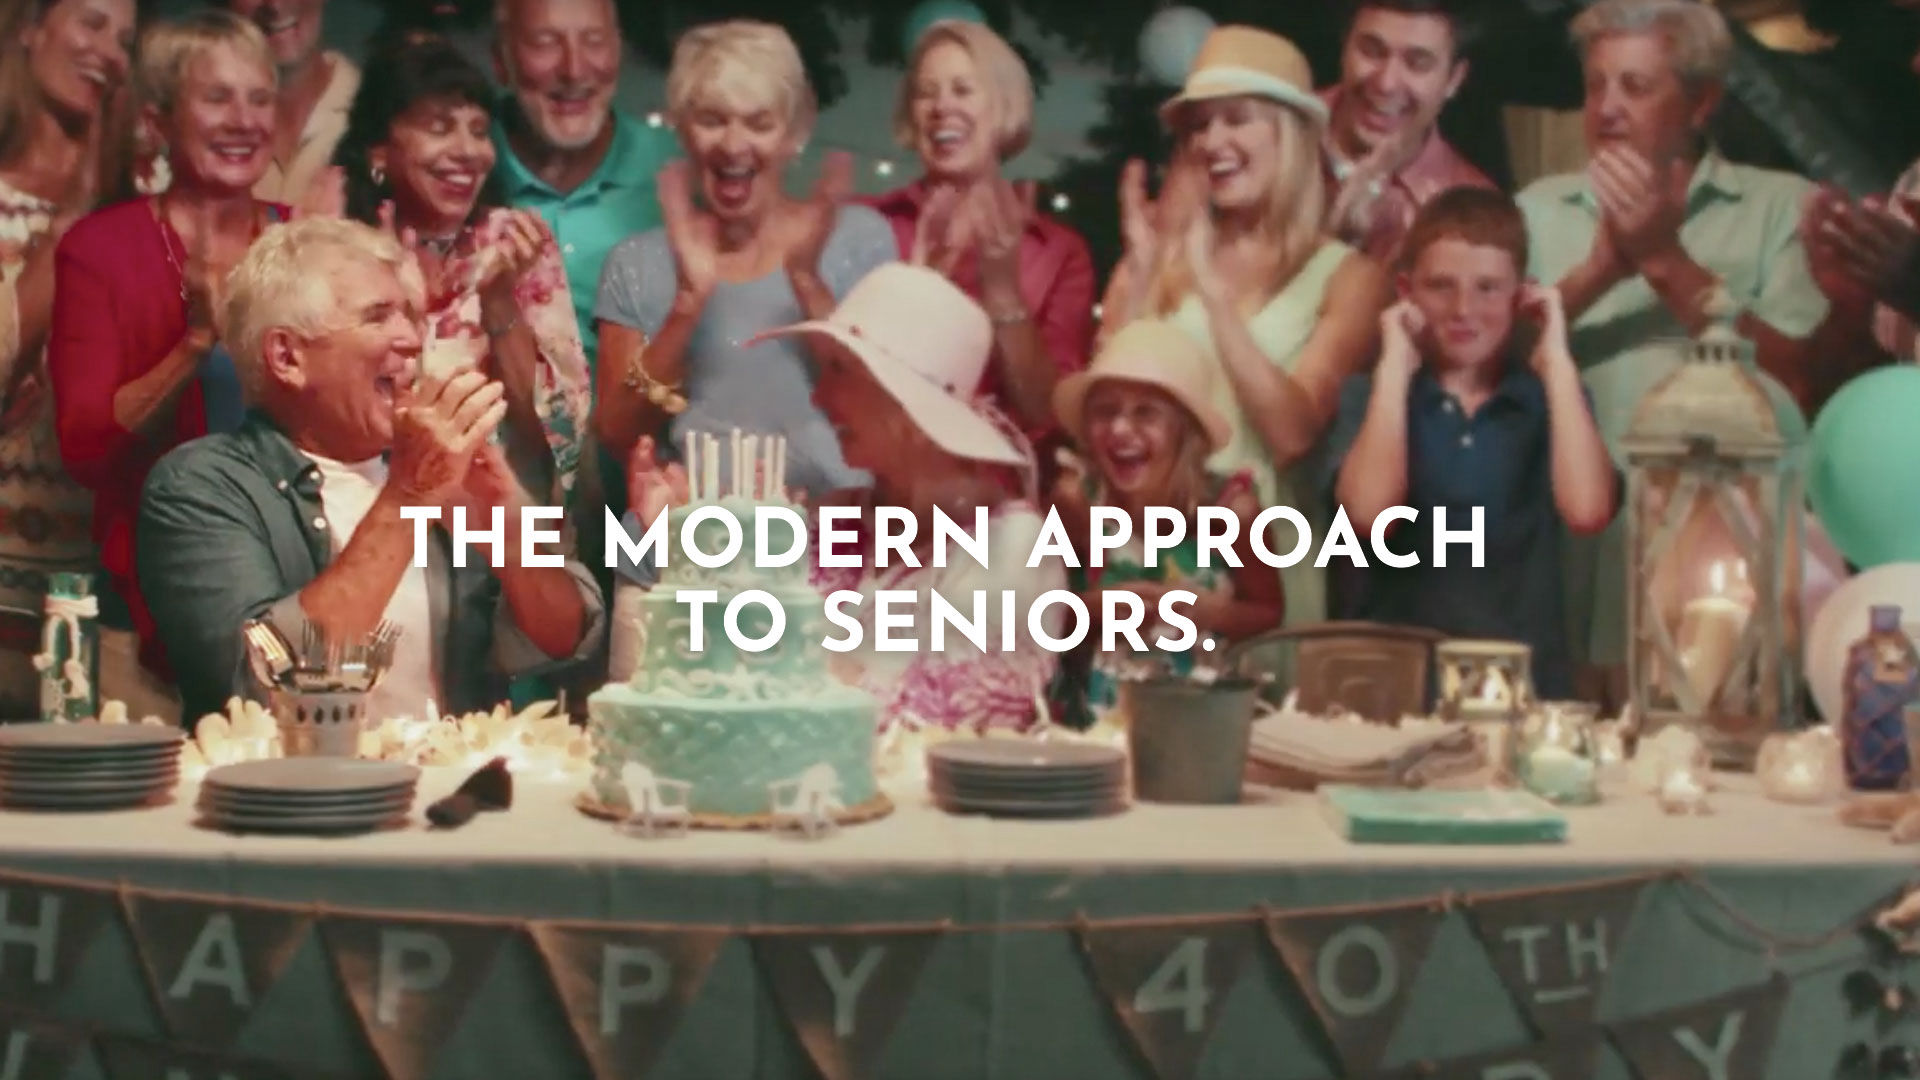 A modern approach to seniors.